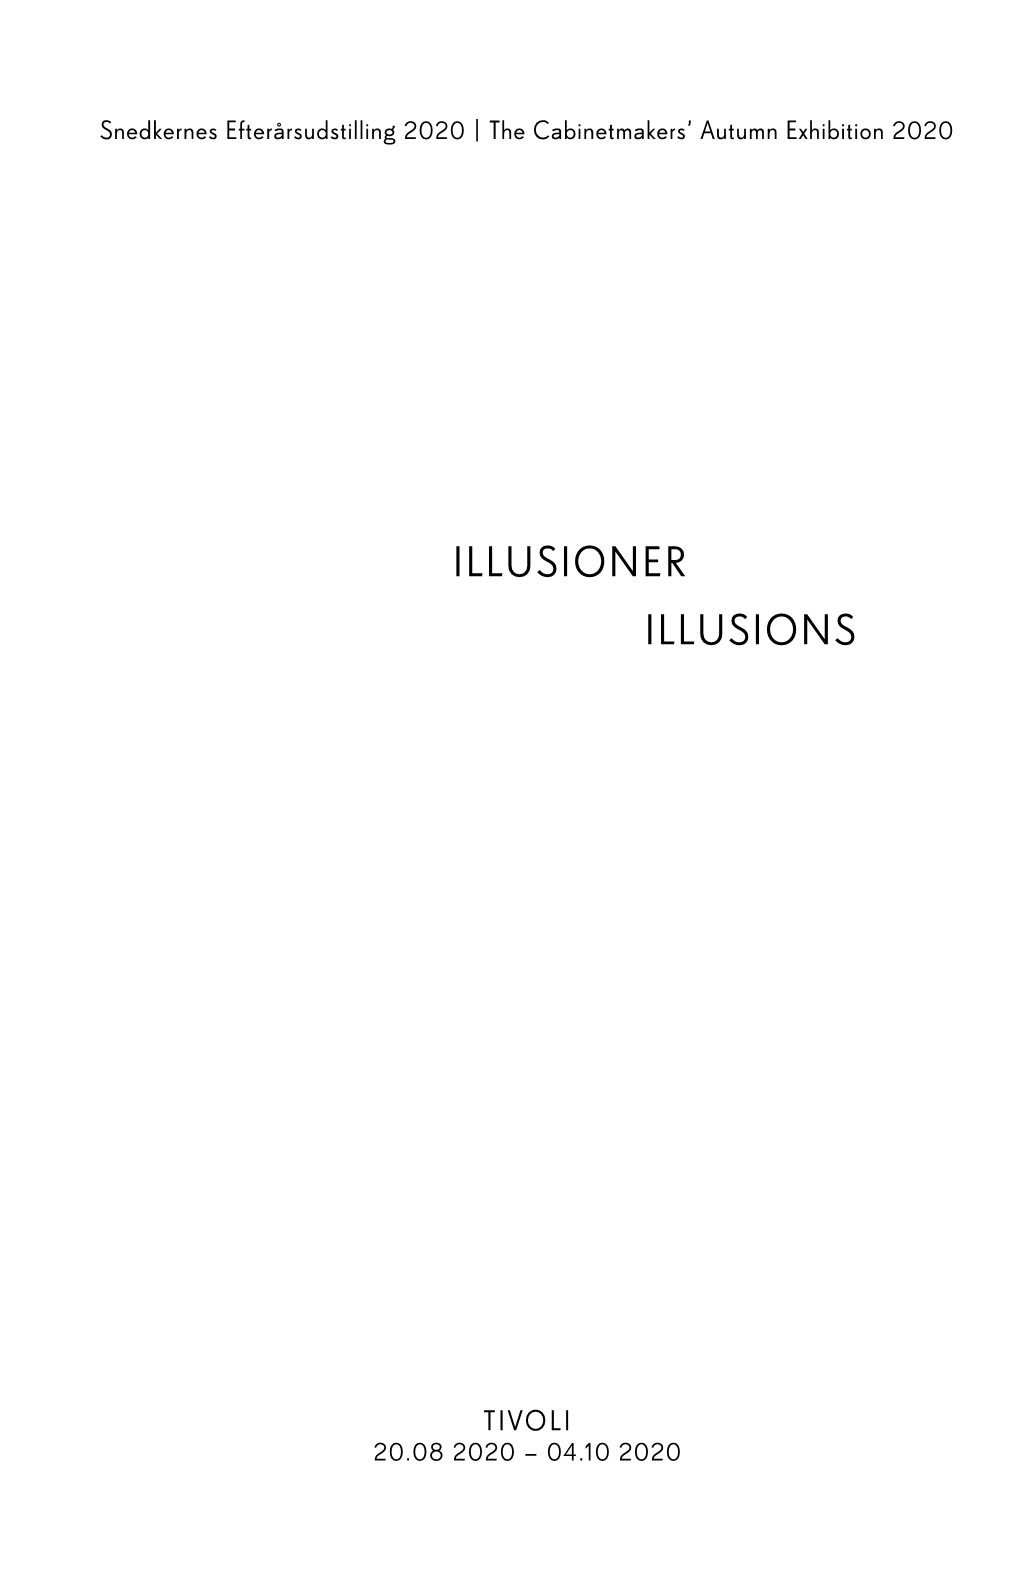 Illusions Illusioner